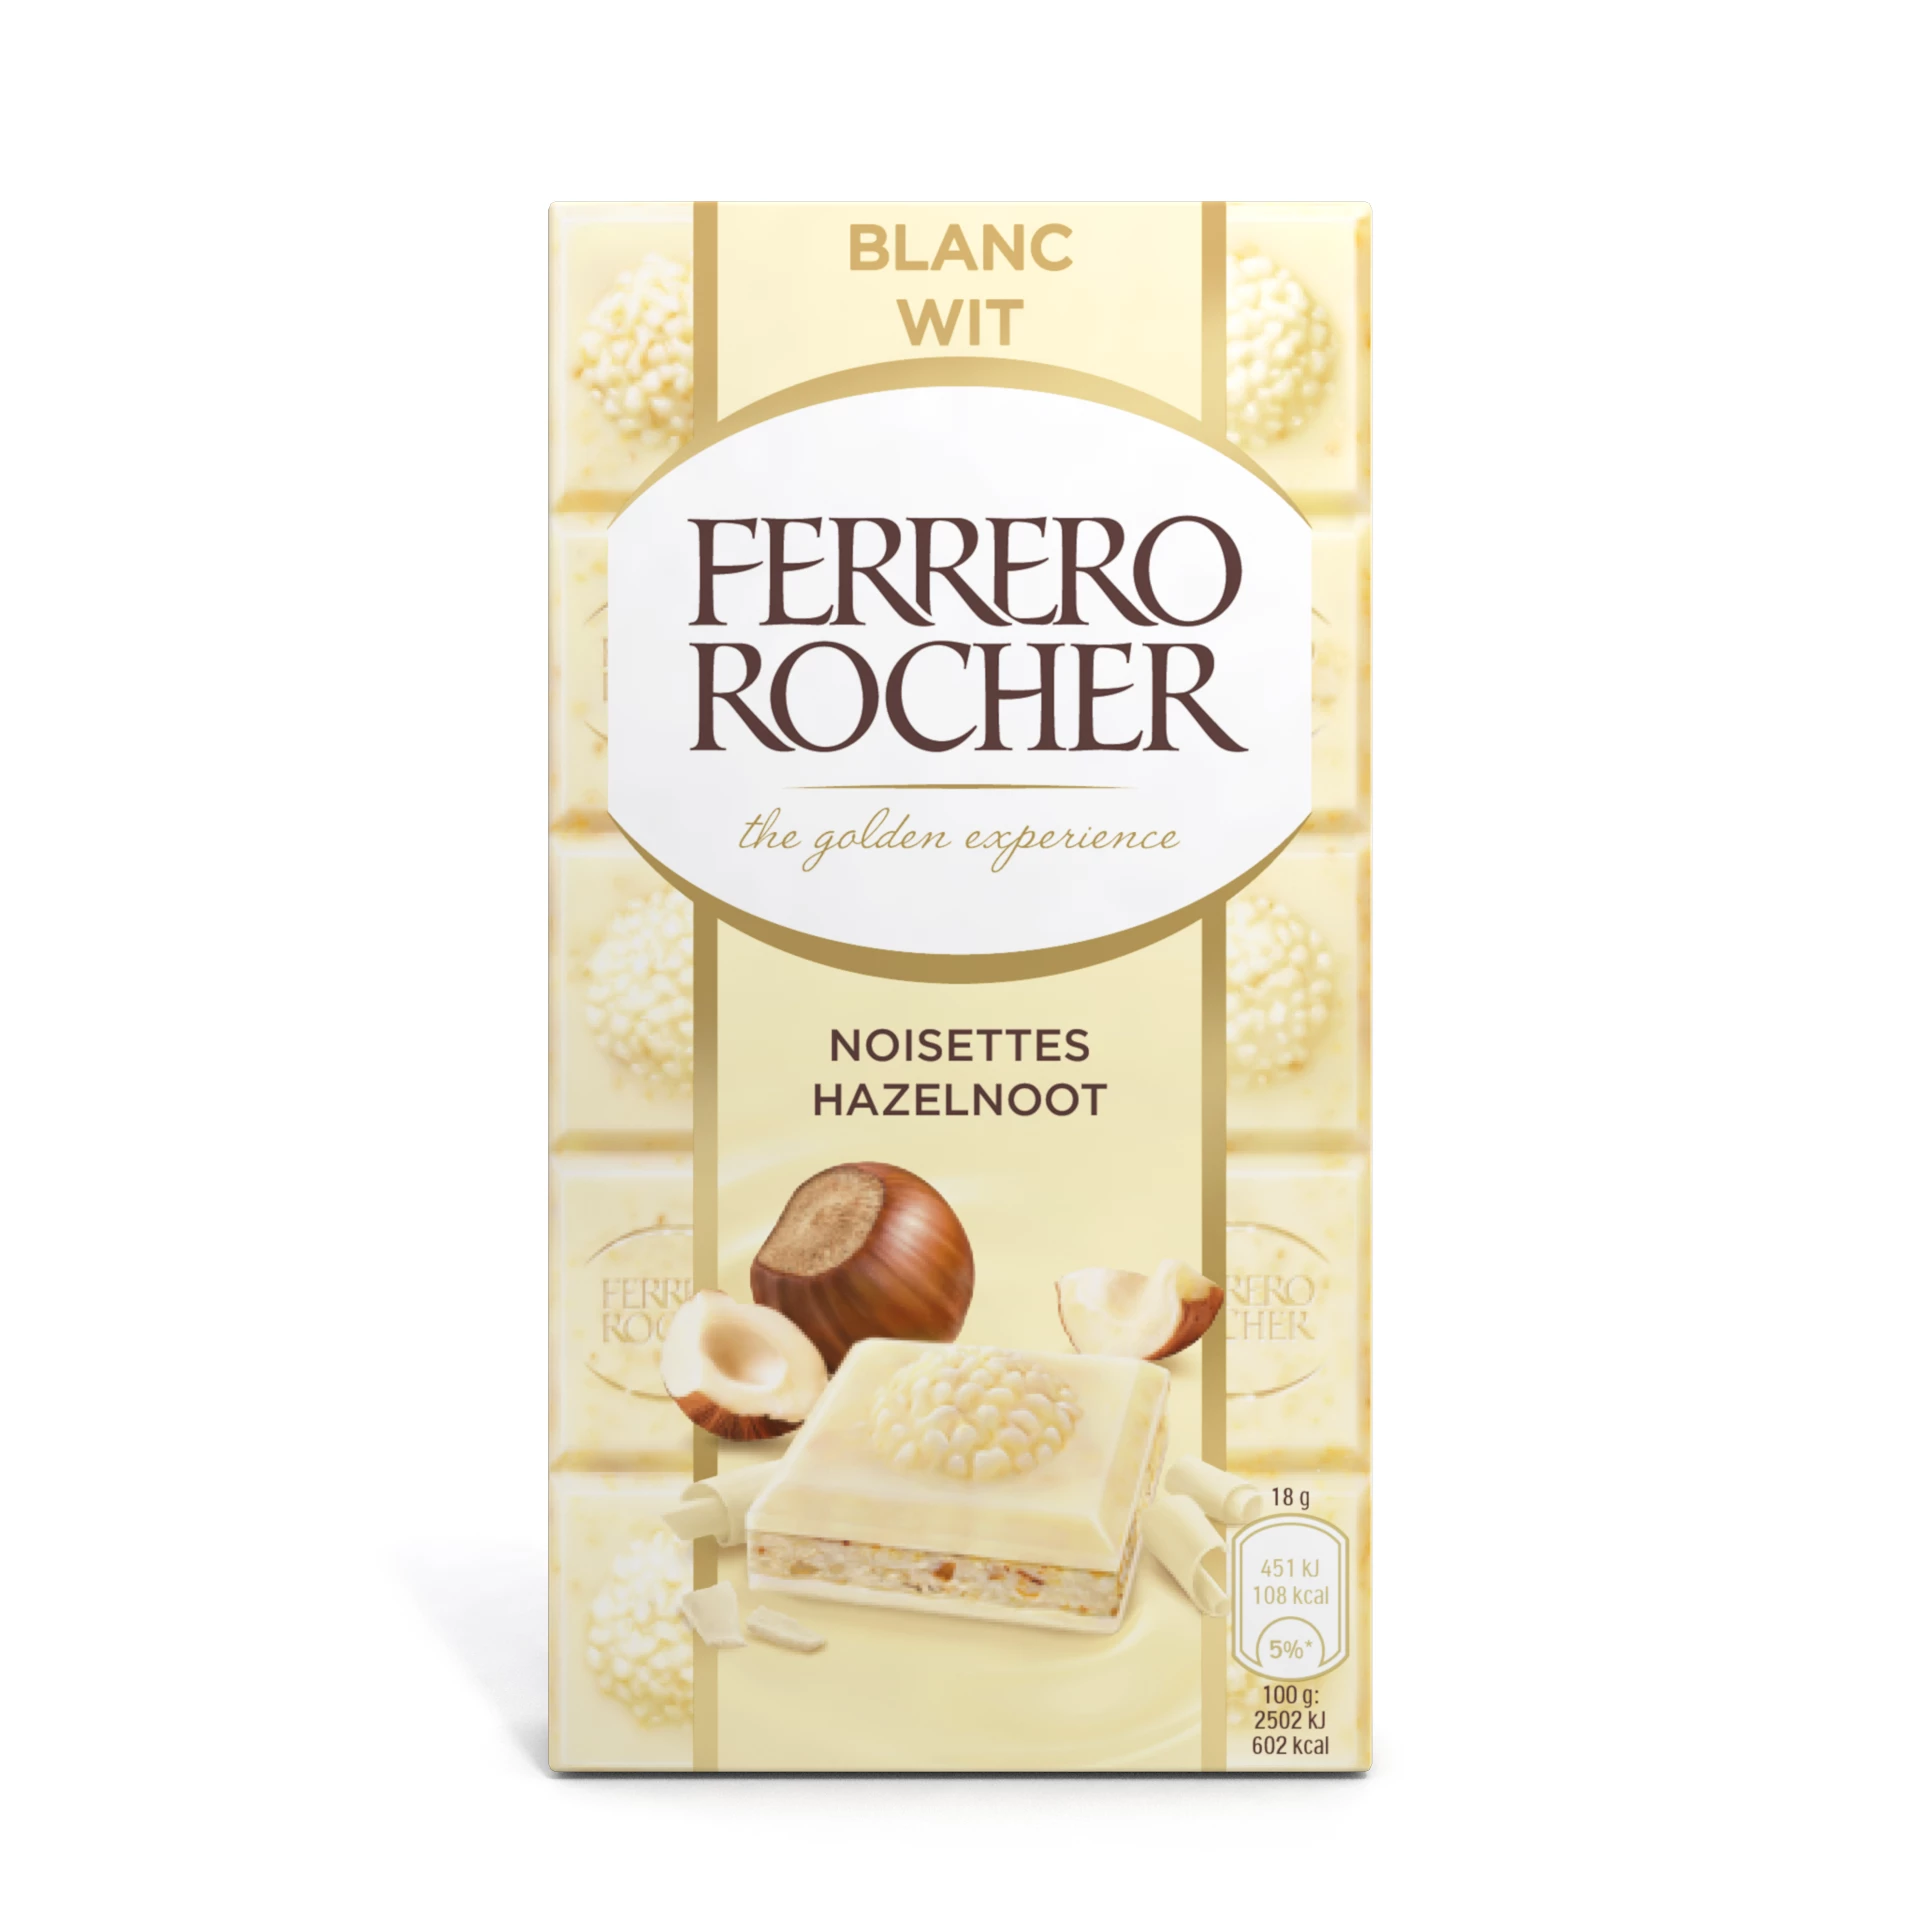 Ferrero Rocher Avellana Blanca, 90g - FERRERO